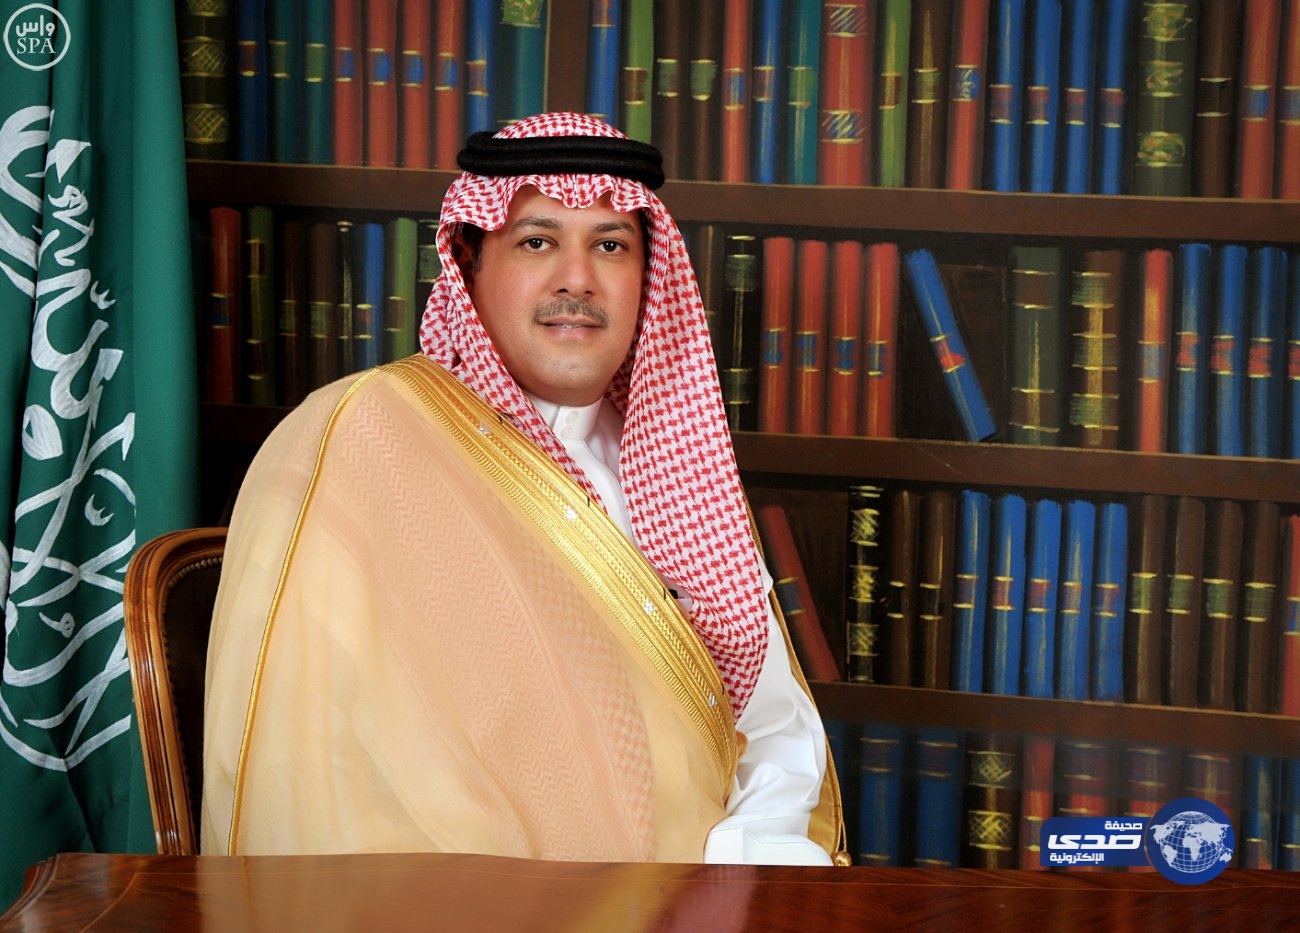 الحارثي يشكر القيادة بمناسبة صدور قرار مجلس الوزراء بنقله